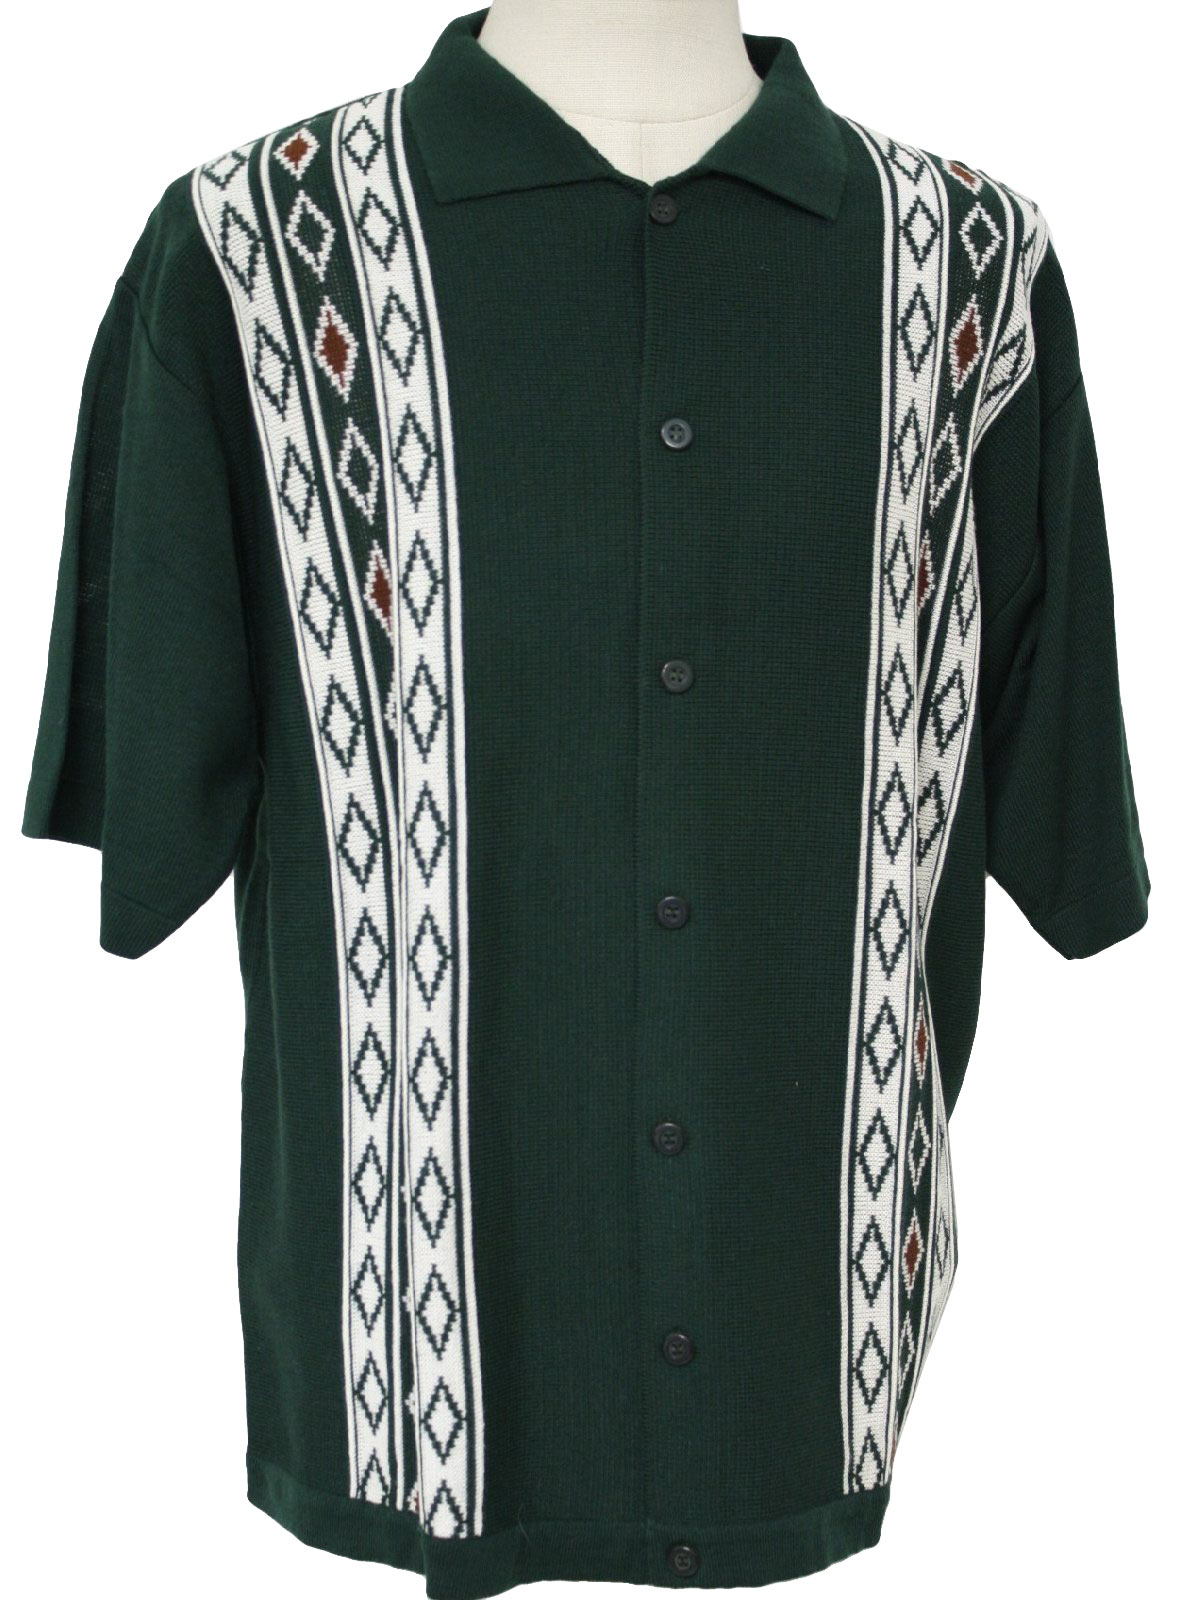 Retro 60s Knit Shirt (Kennington) : 60s style (made in 90s) -Kennington ...